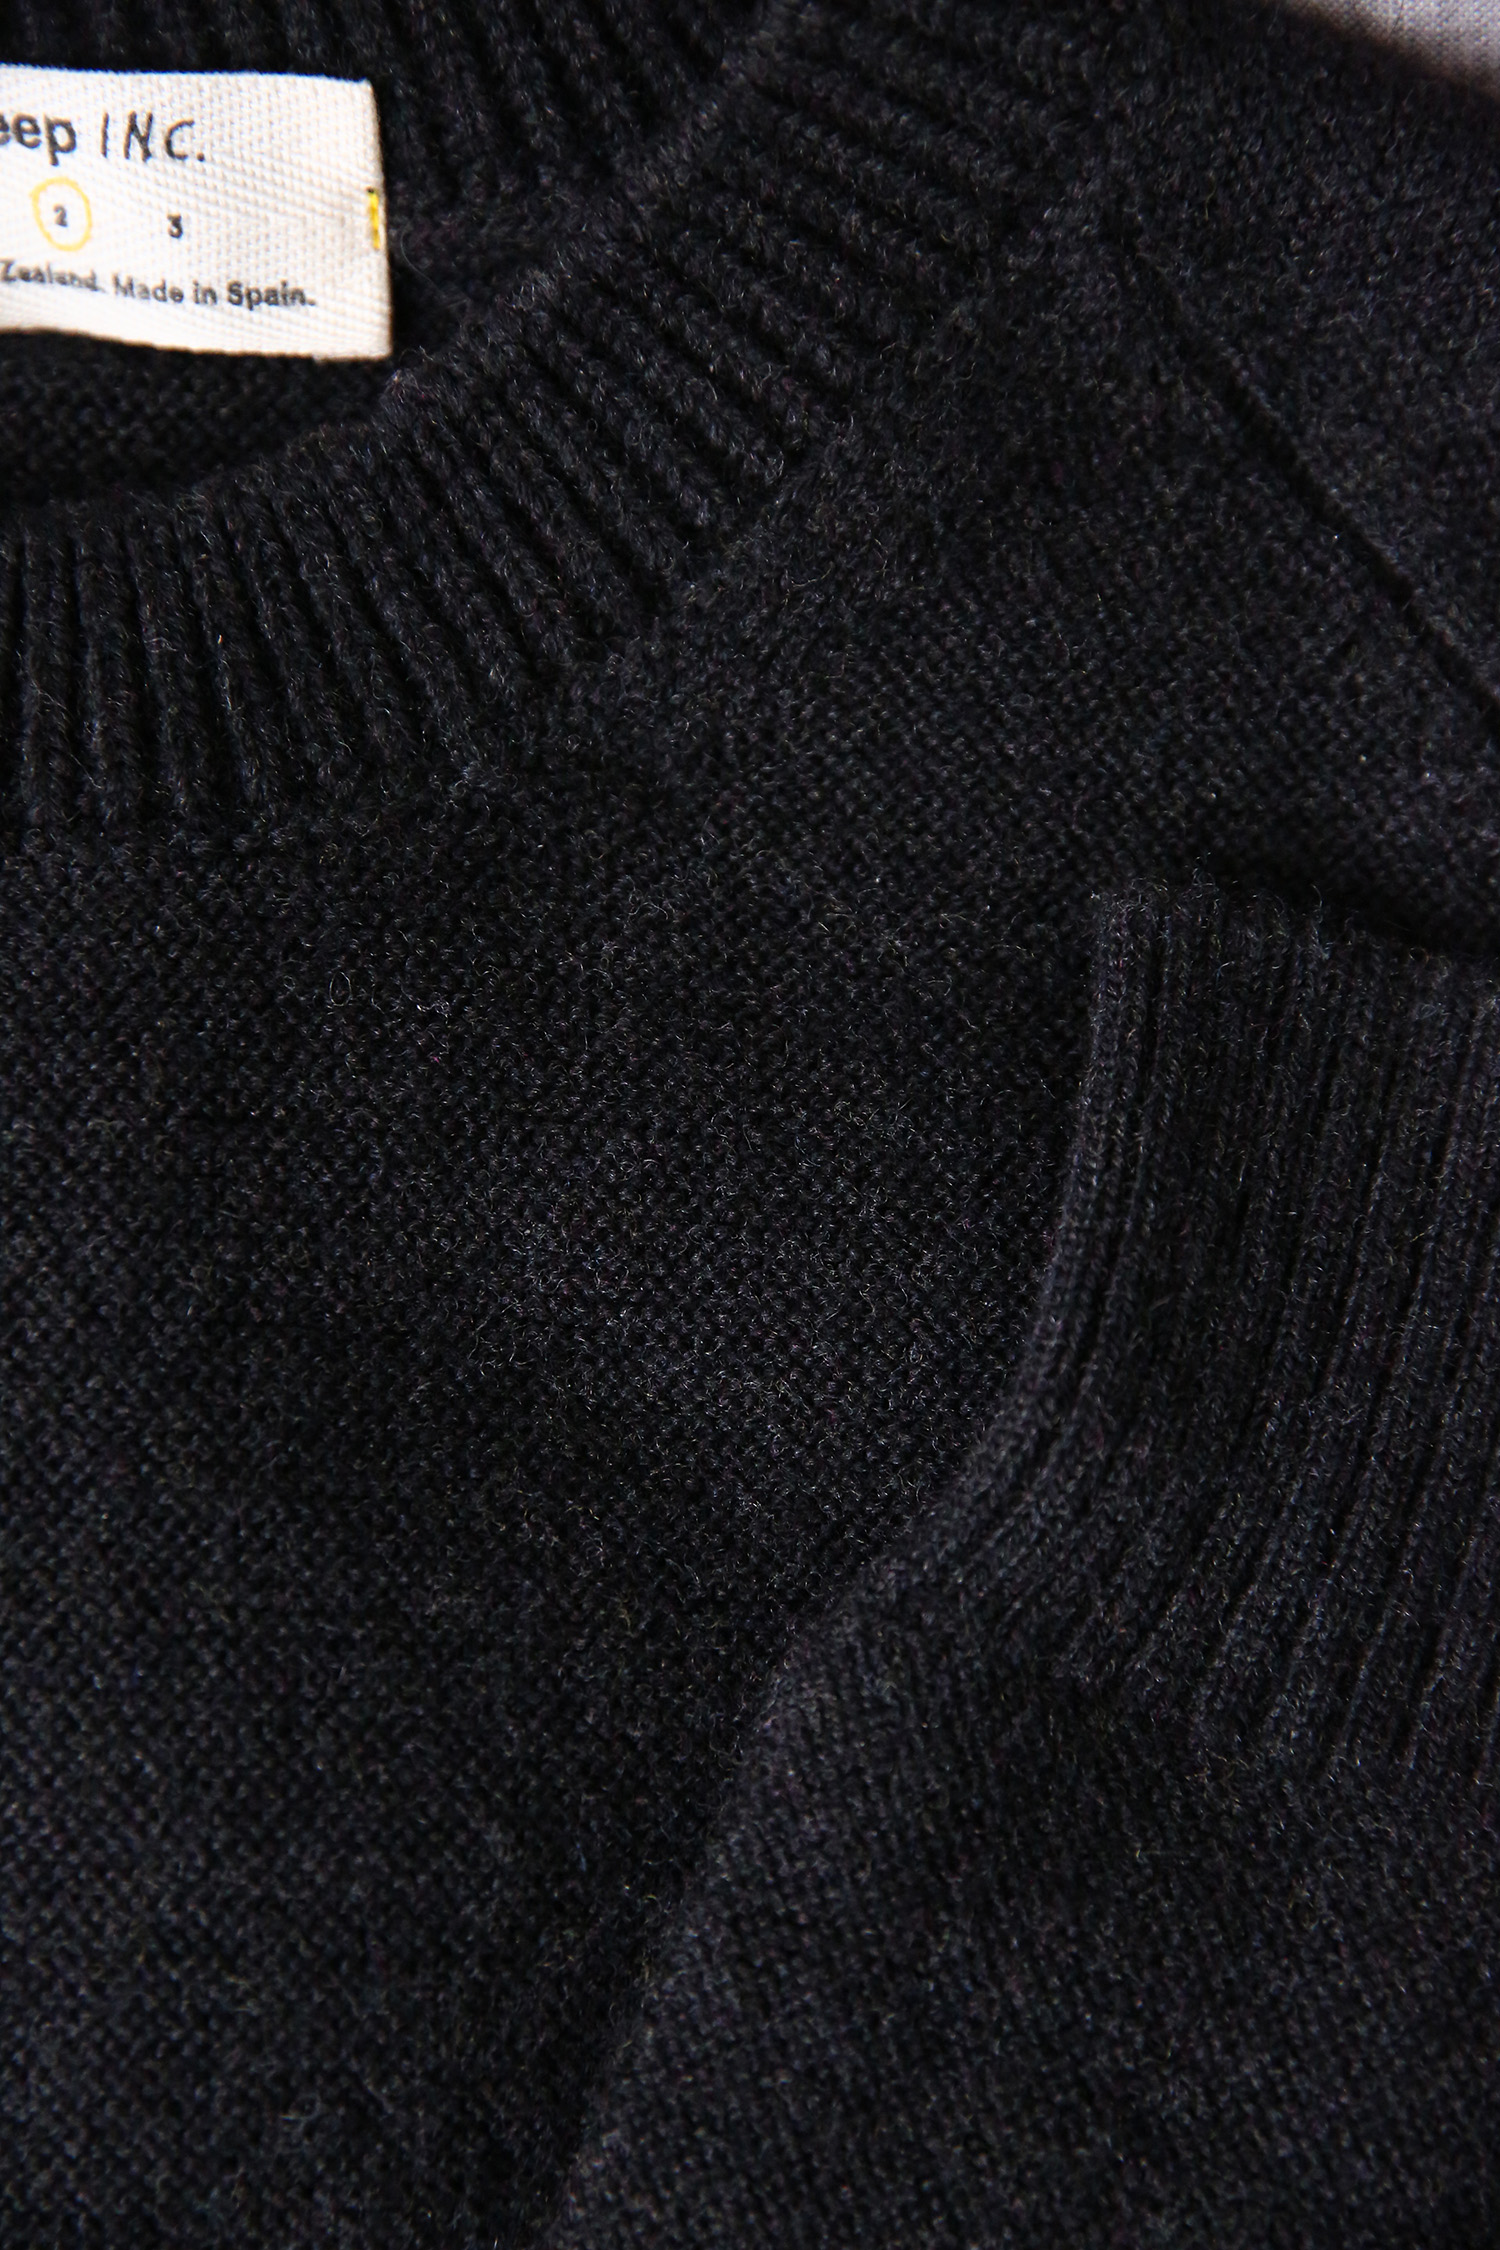 Sheep Inc medium sweater in anthracite